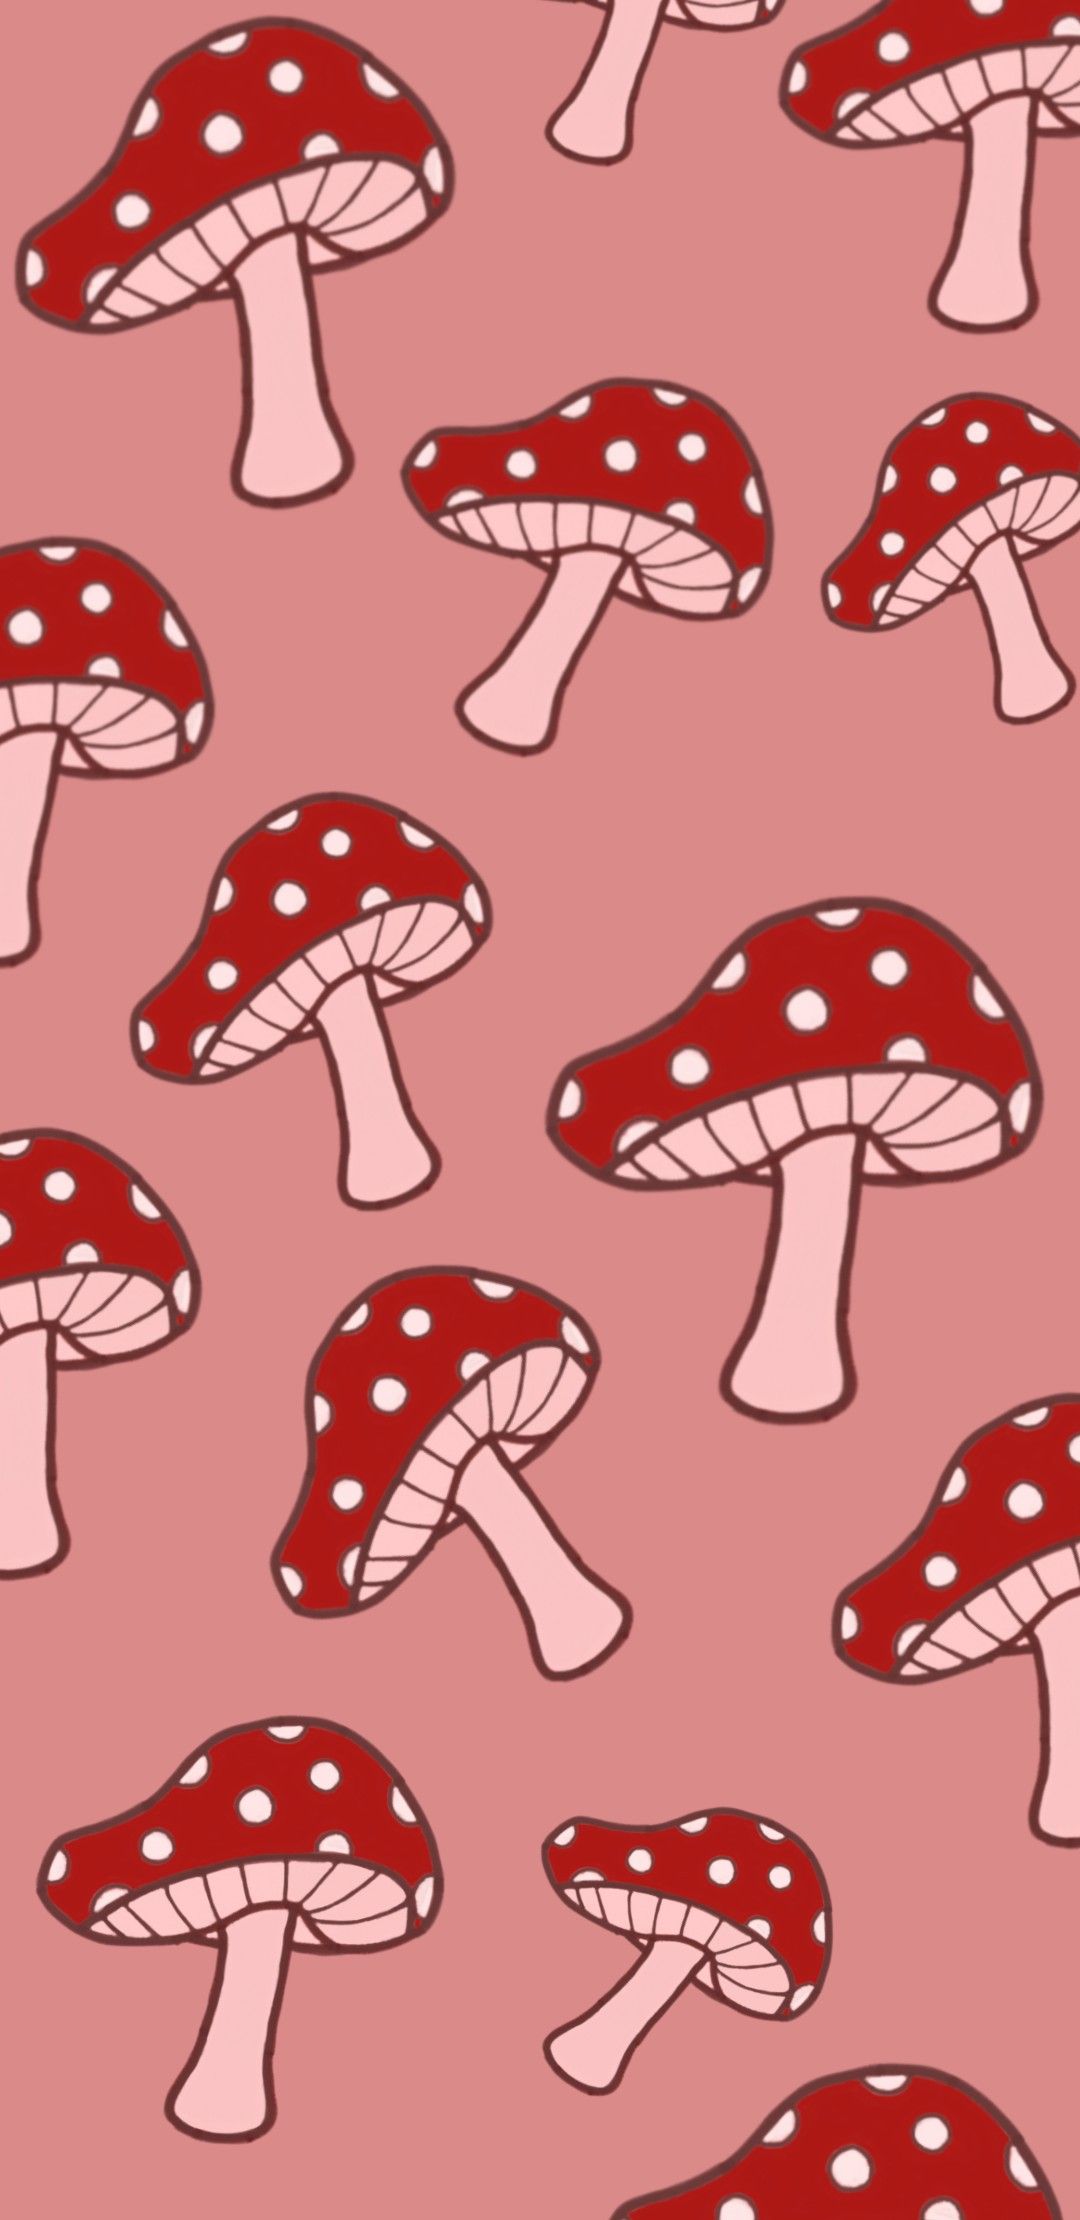 Download A Cartoon Mushroom On A Green Background Wallpaper  Wallpaperscom